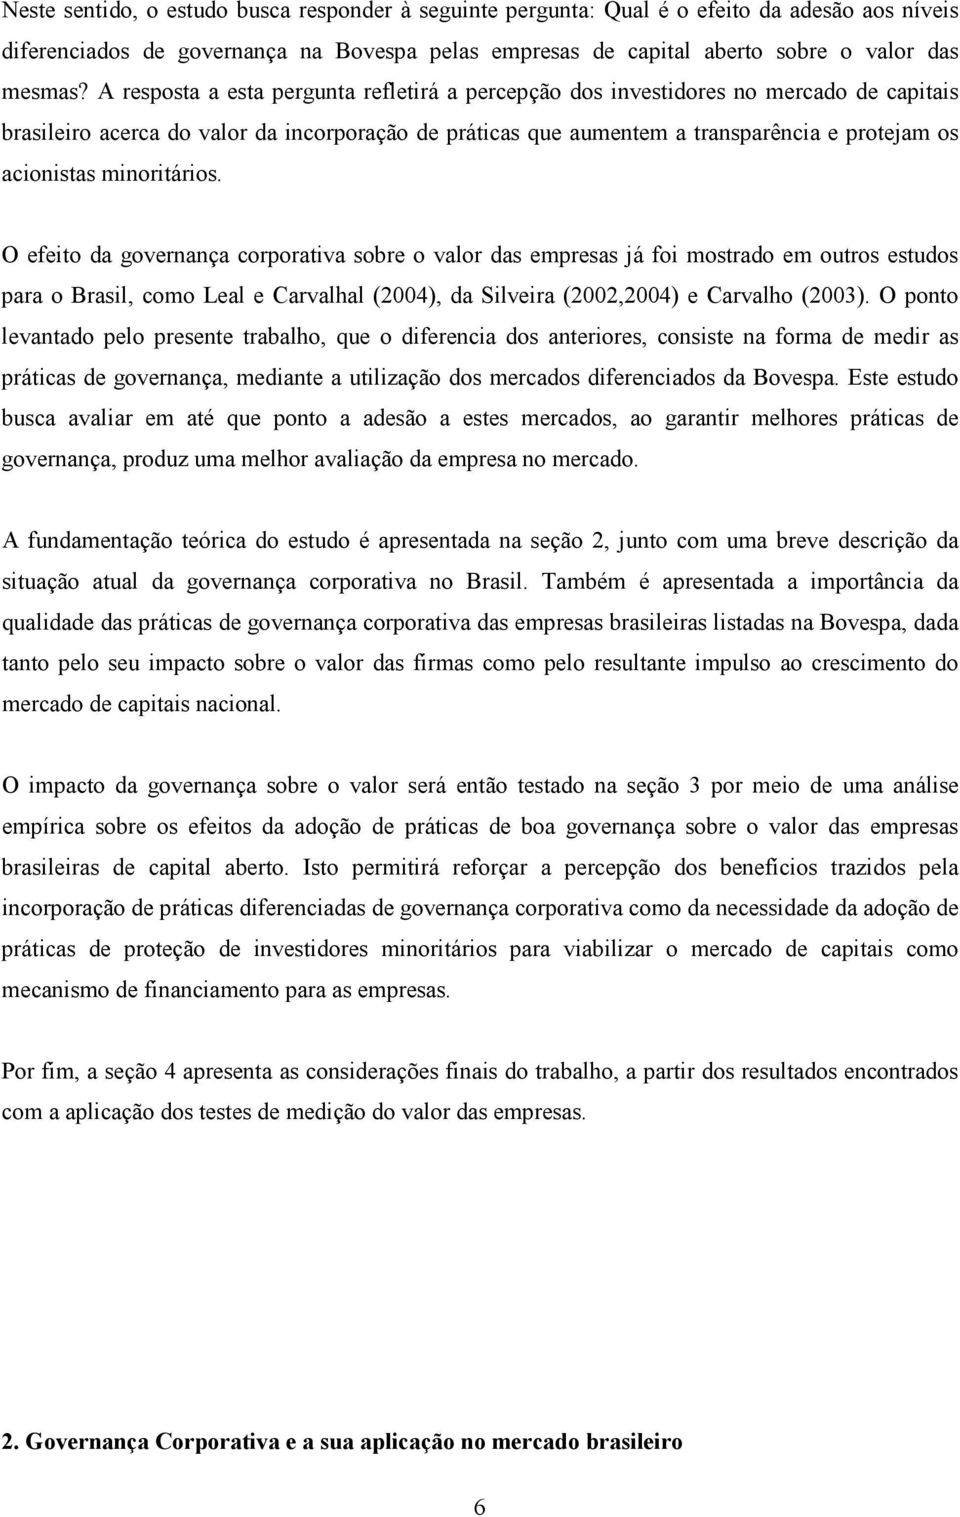 minoritários. O efeito da governança corporativa sobre o valor das empresas já foi mostrado em outros estudos para o Brasil, como Leal e Carvalhal (2004), da Silveira (2002,2004) e Carvalho (2003).